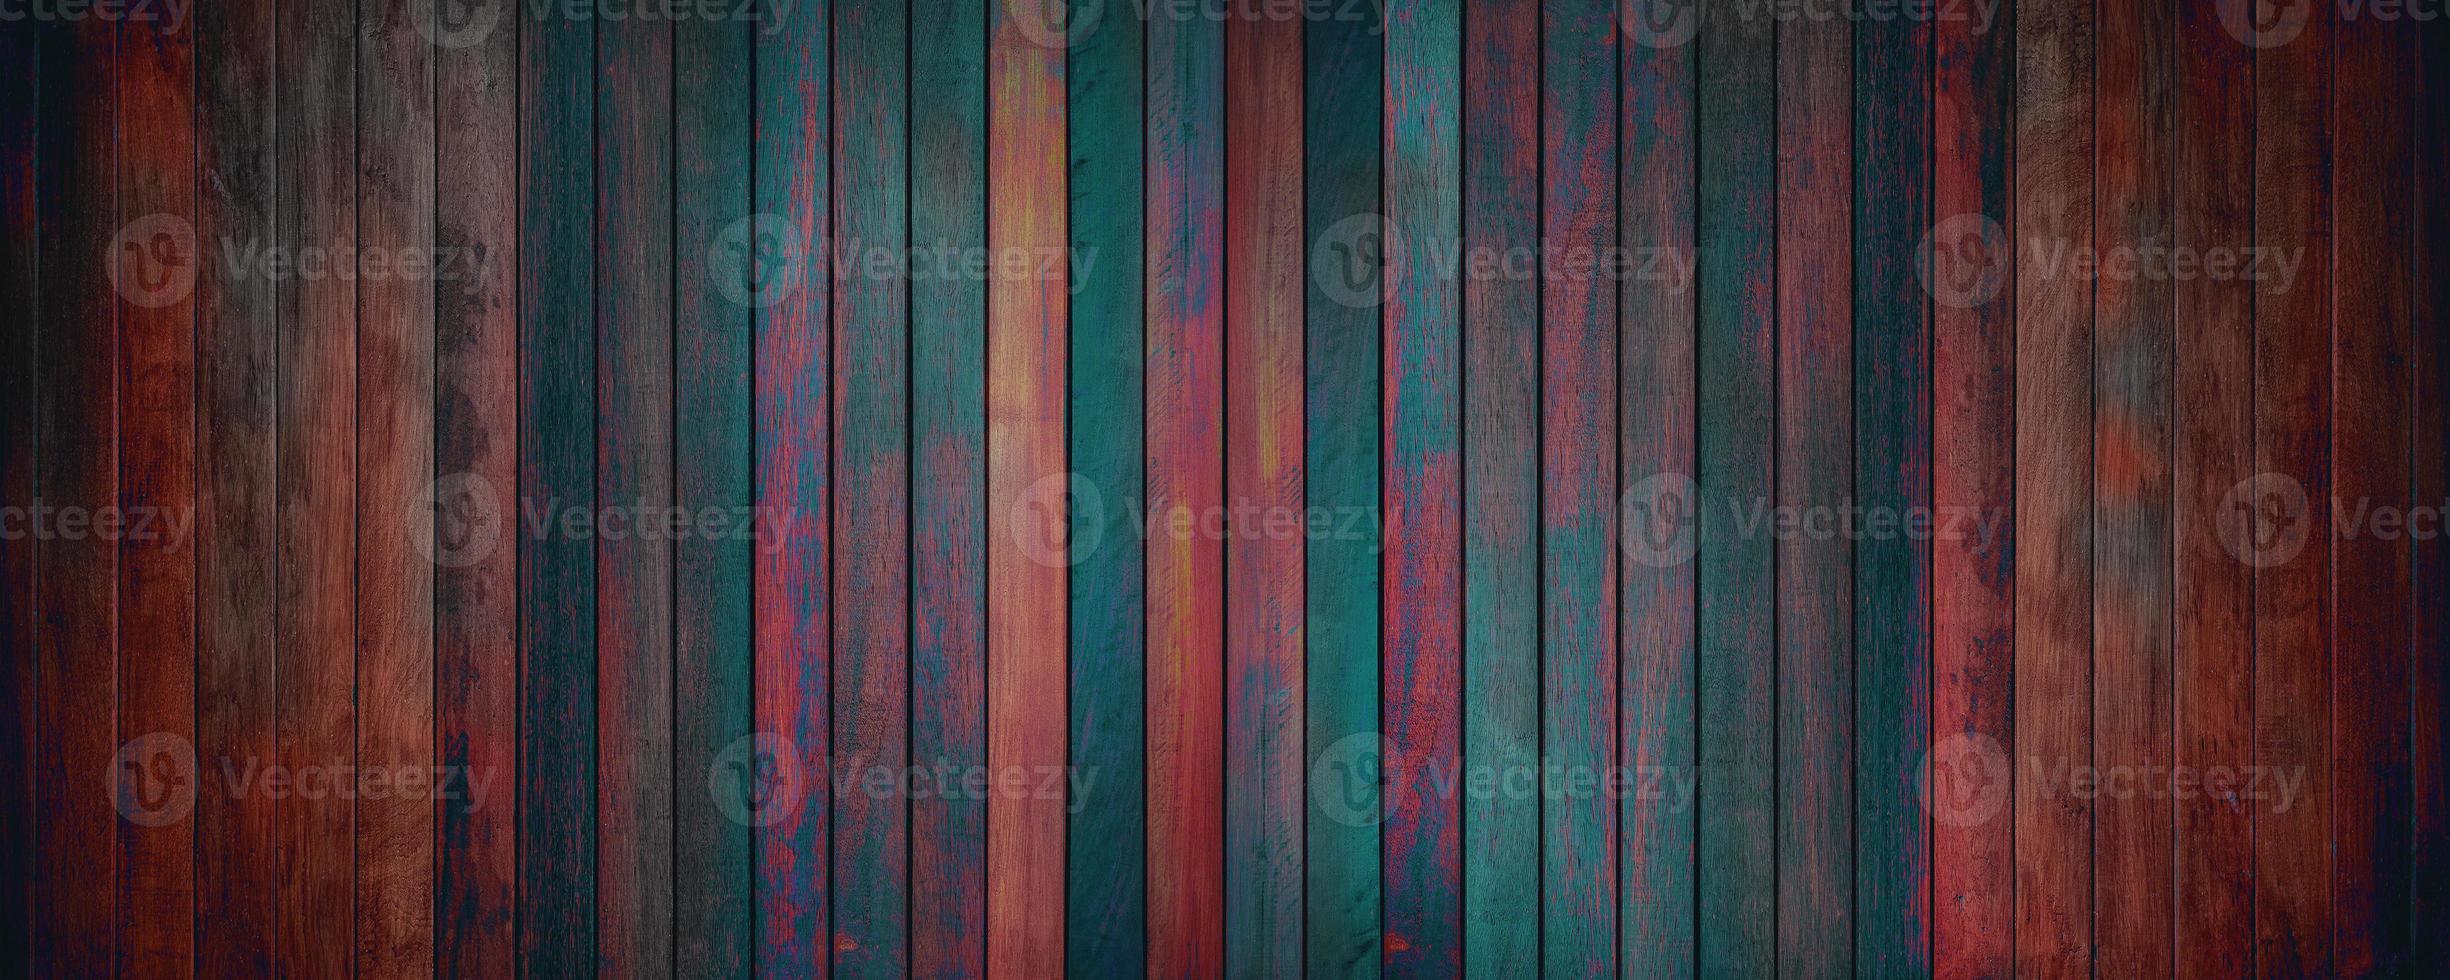 textura de madera vieja para el fondo del patrón. telón de fondo de diseño de hogar, tienda y cafetería. pintar la pared de madera y copiar el espacio. foto